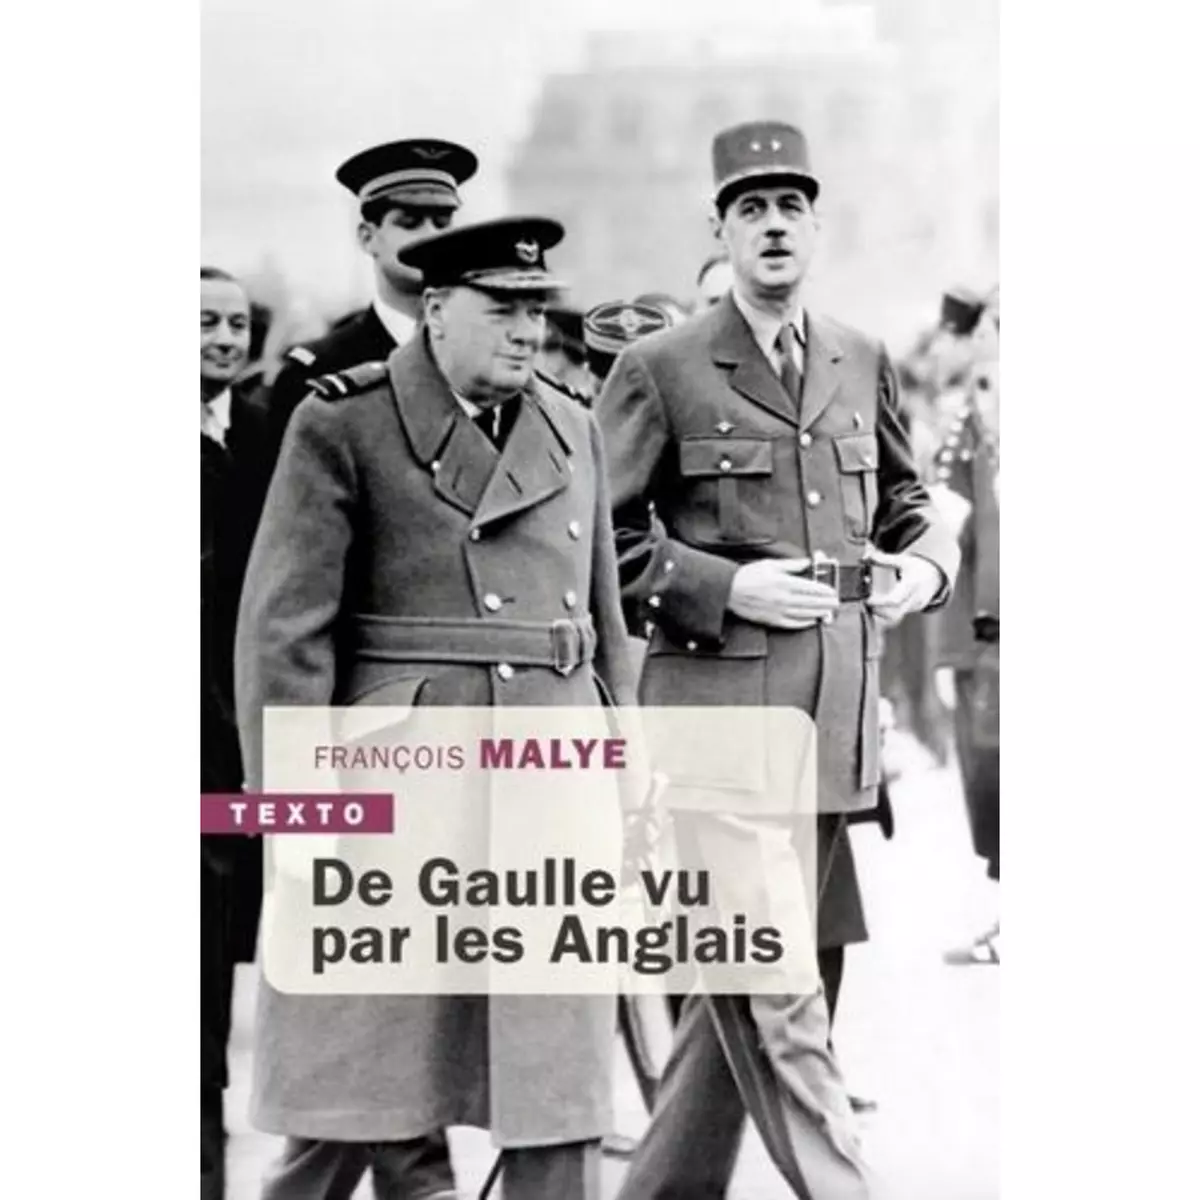  DE GAULLE VU PAR LES ANGLAIS, Malye François